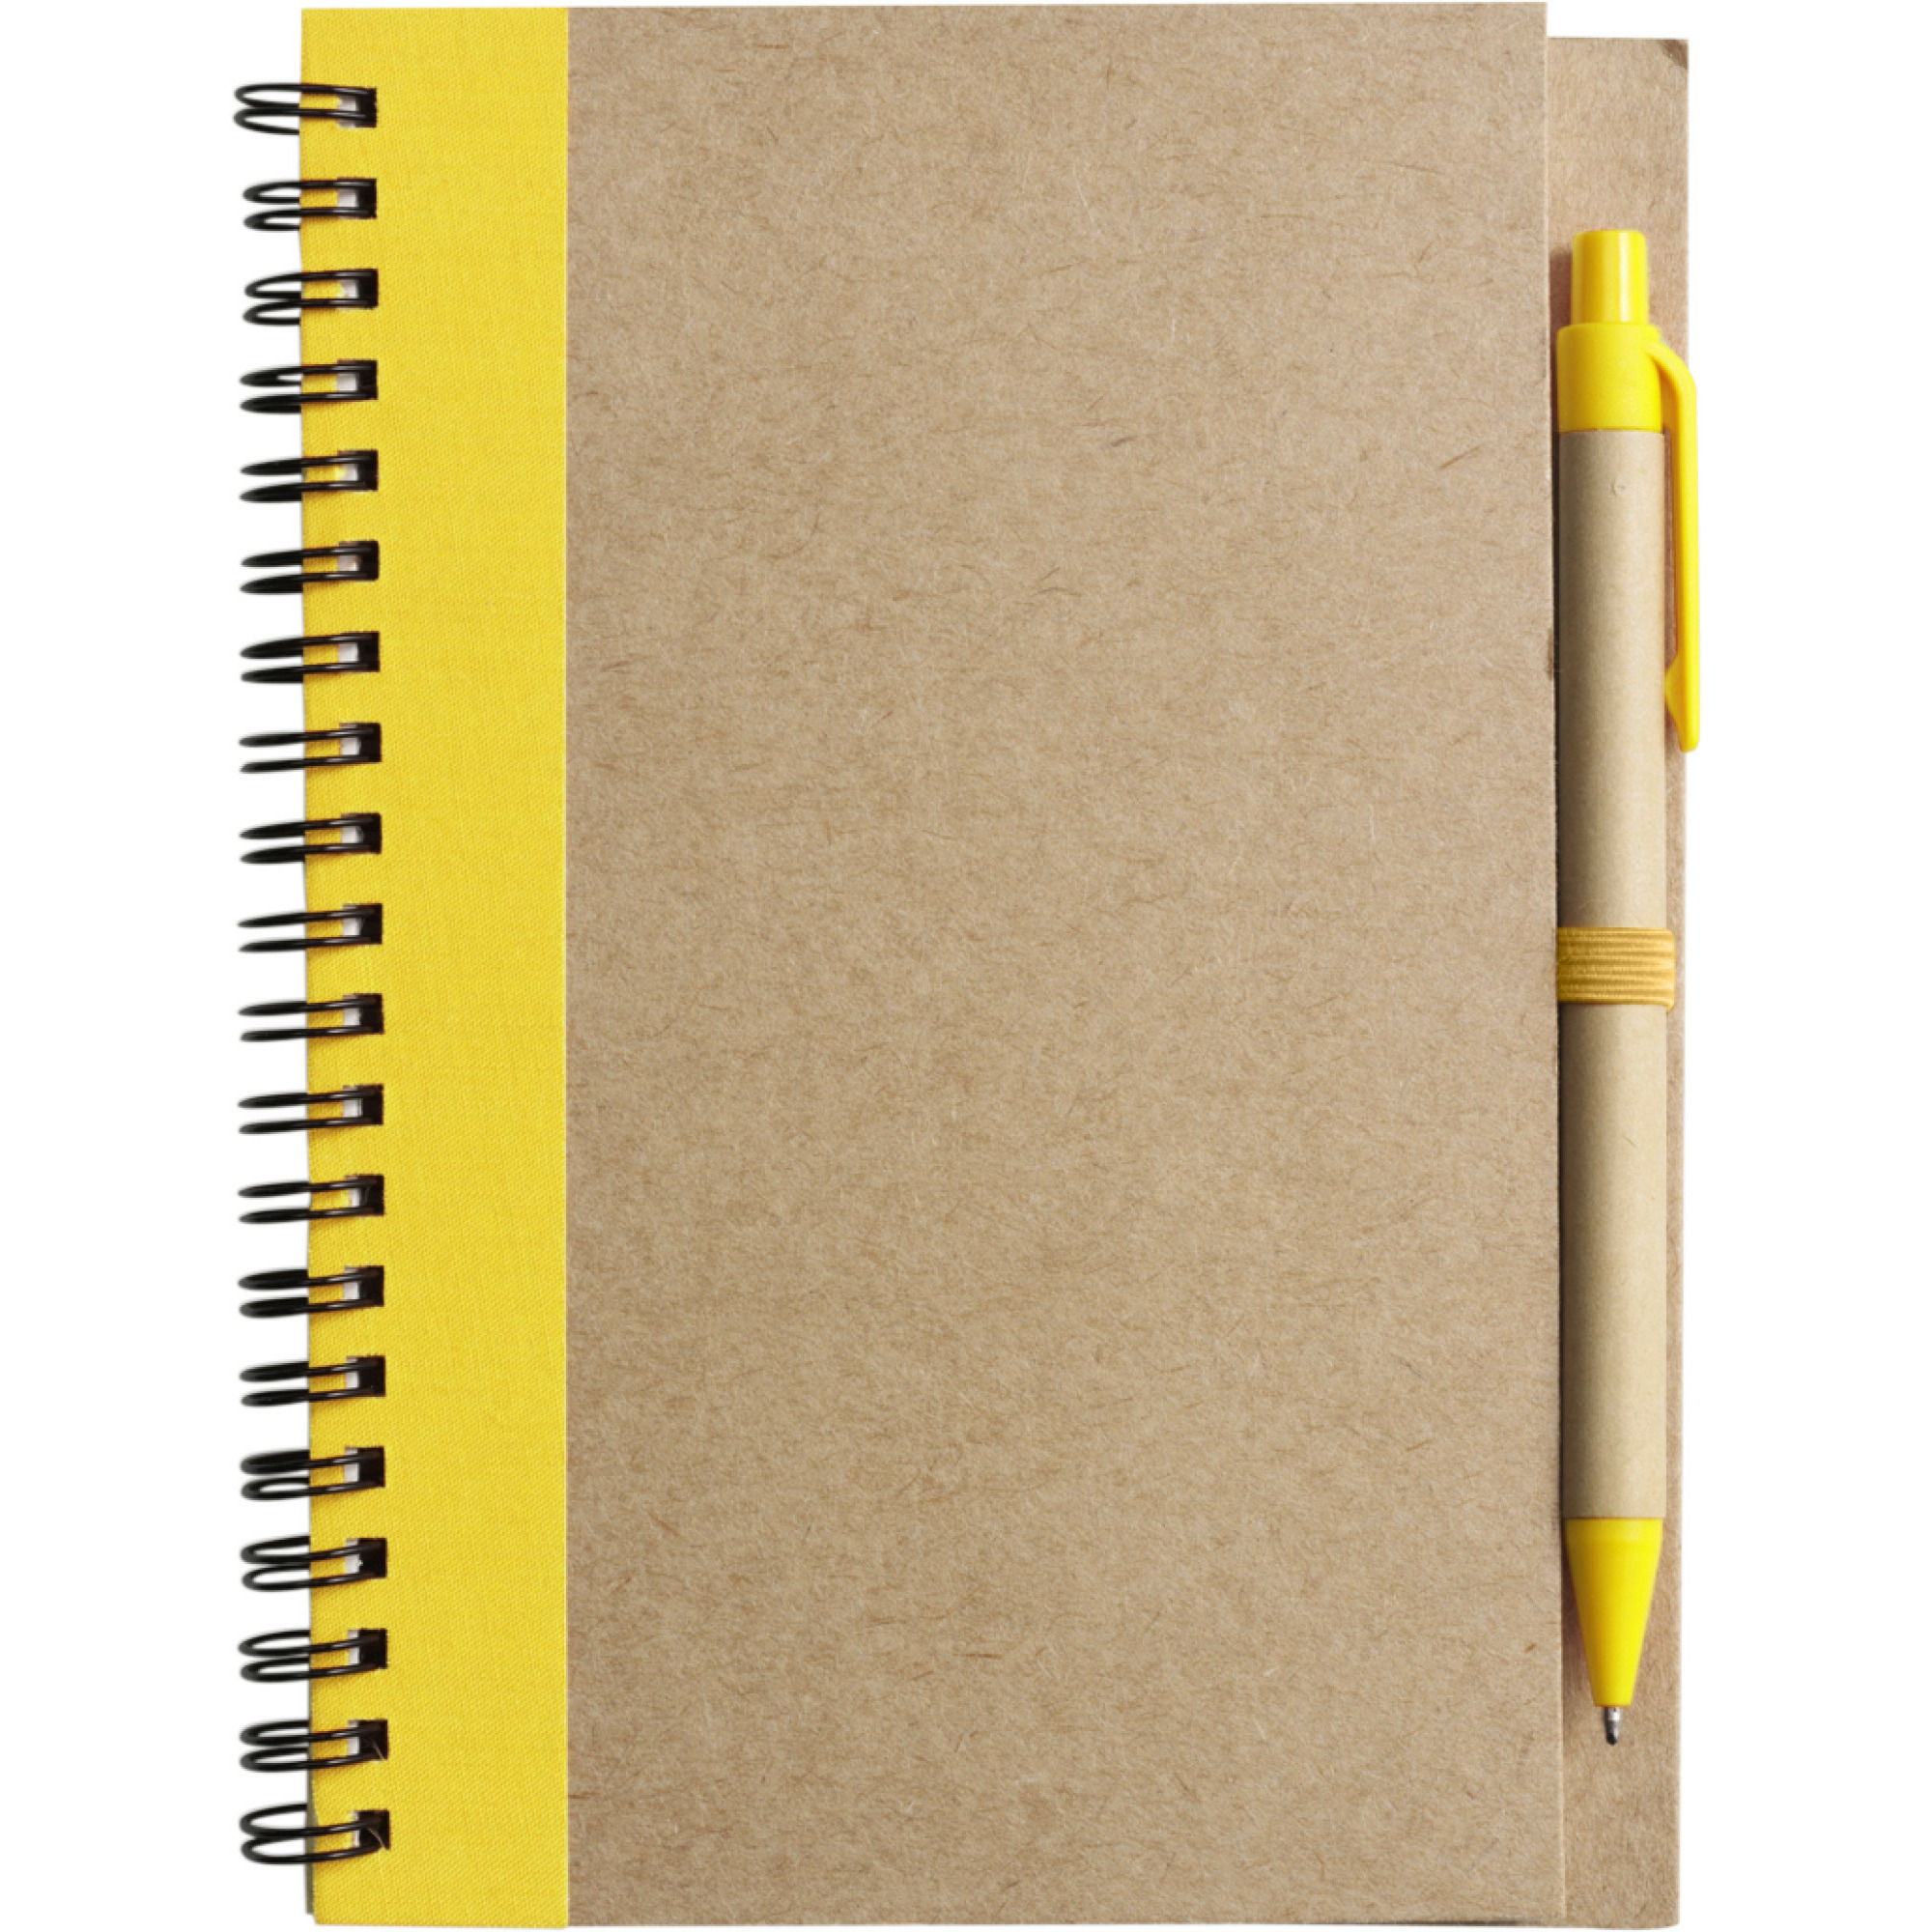 Notitie-opschrijf boekje met balpen harde kaft beige-geel 18x13cm 60blz gelinieerd